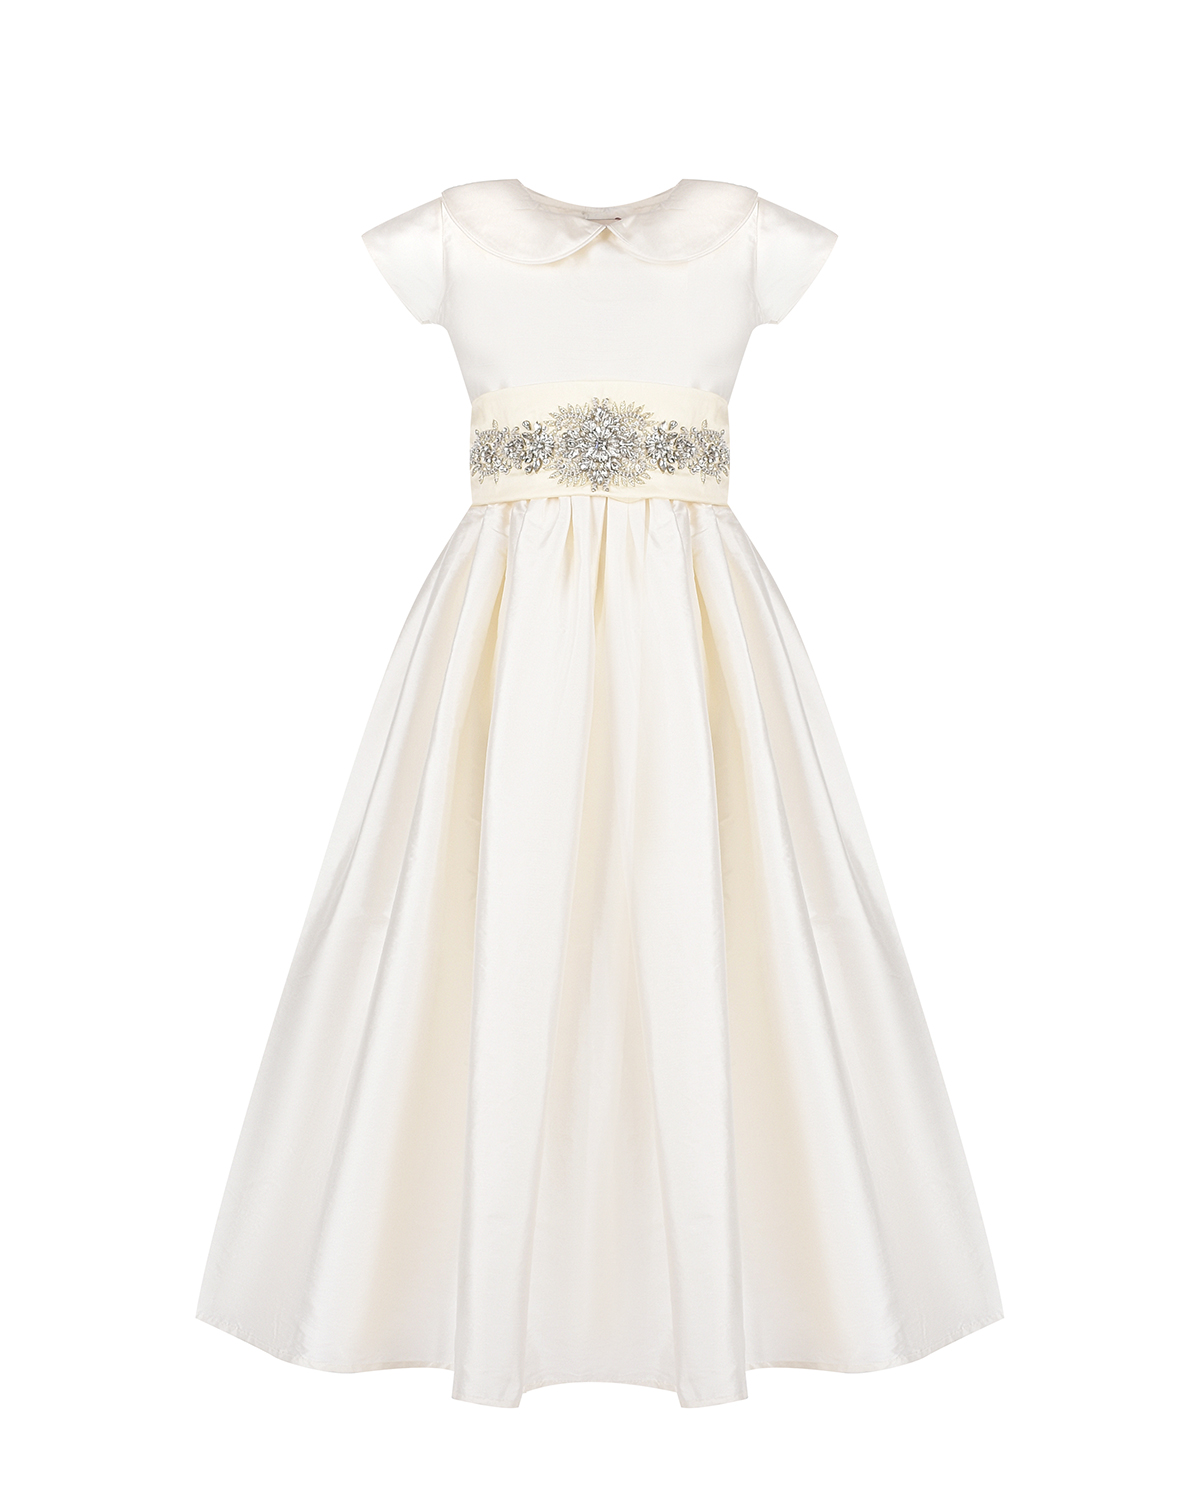 Платье кремового цвета с вышивкой стразами, размер 104